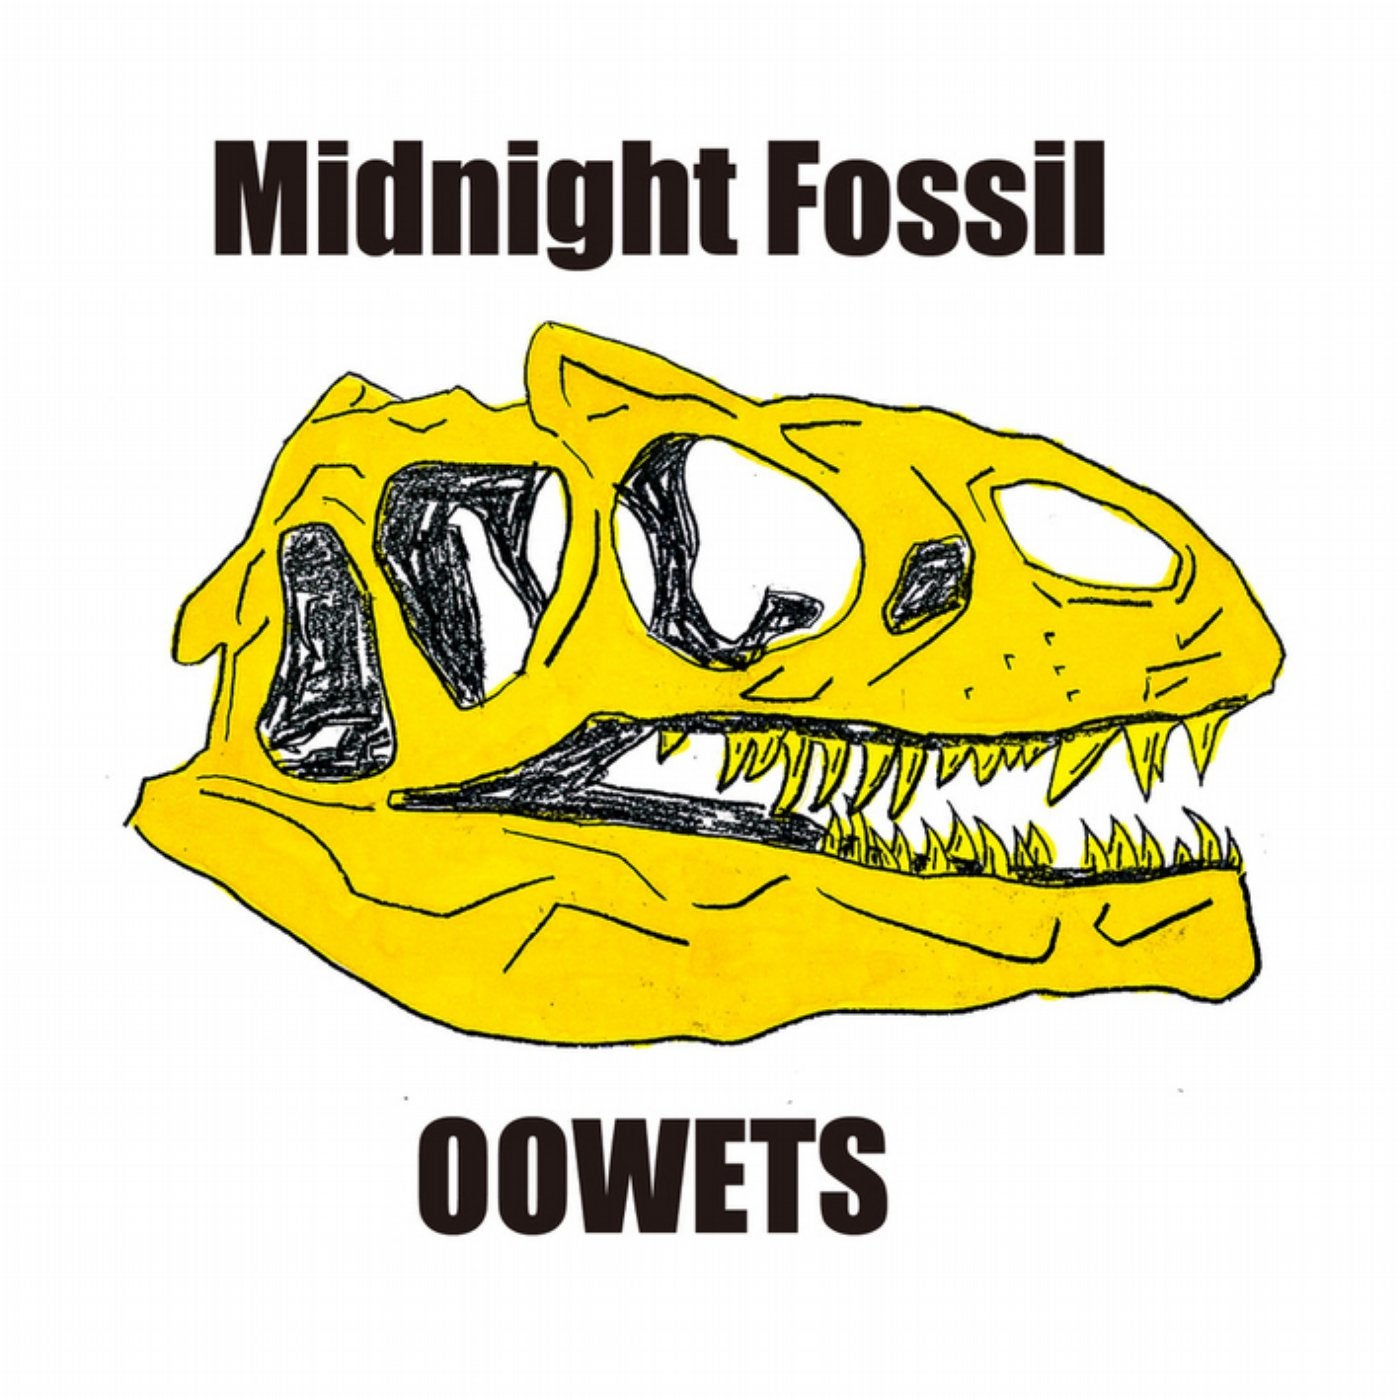 Midnight Fossil